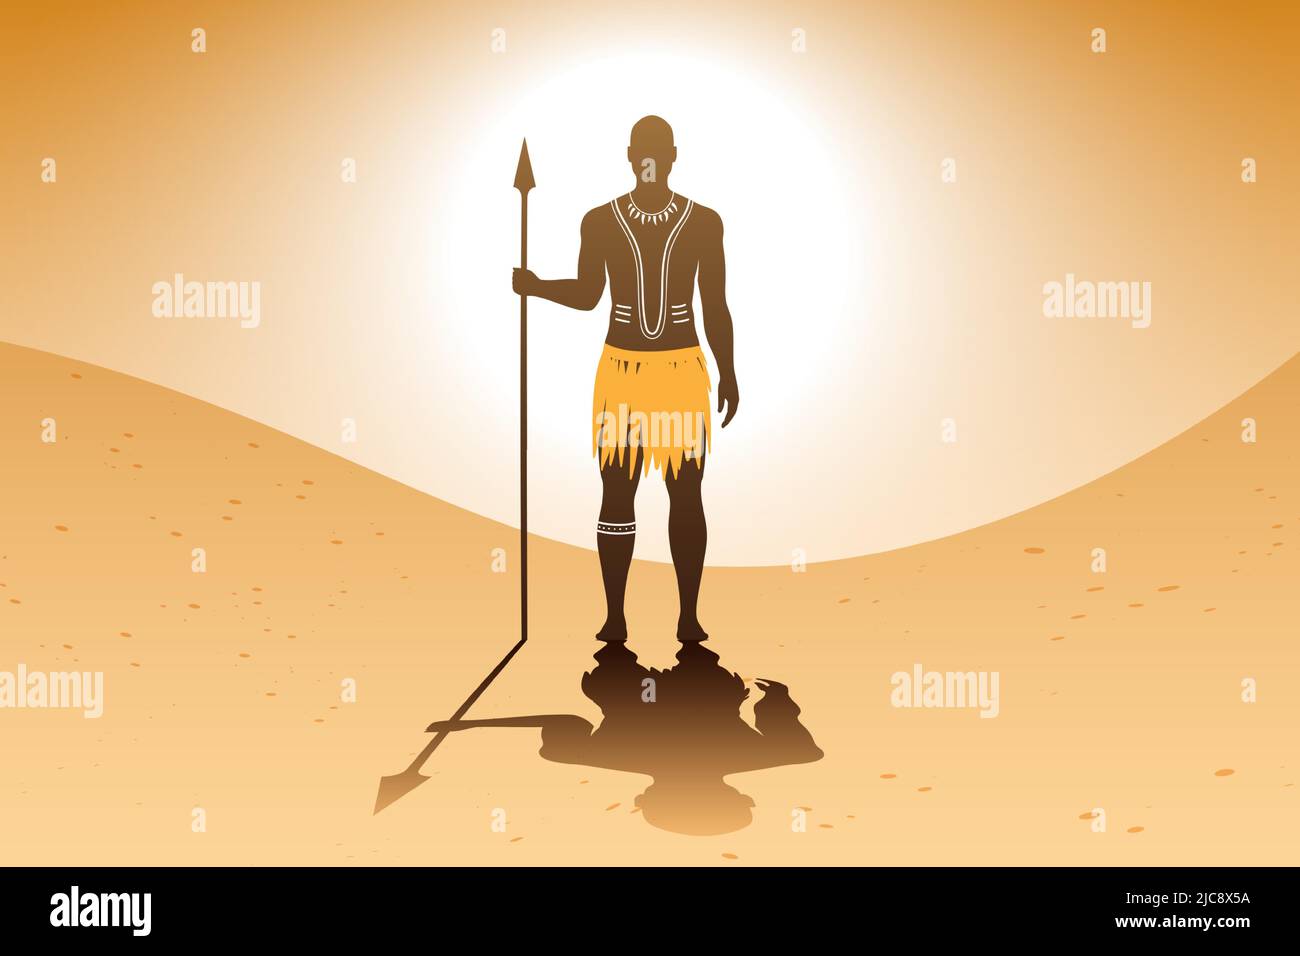 Homme aborigène africain avec art du corps traditionnel et robe ethnique, debout sur un fond de paysage sablonneux, tout en tenant une lance. Illustration du vecteur guerrier de la tribu Massai. Illustration de Vecteur